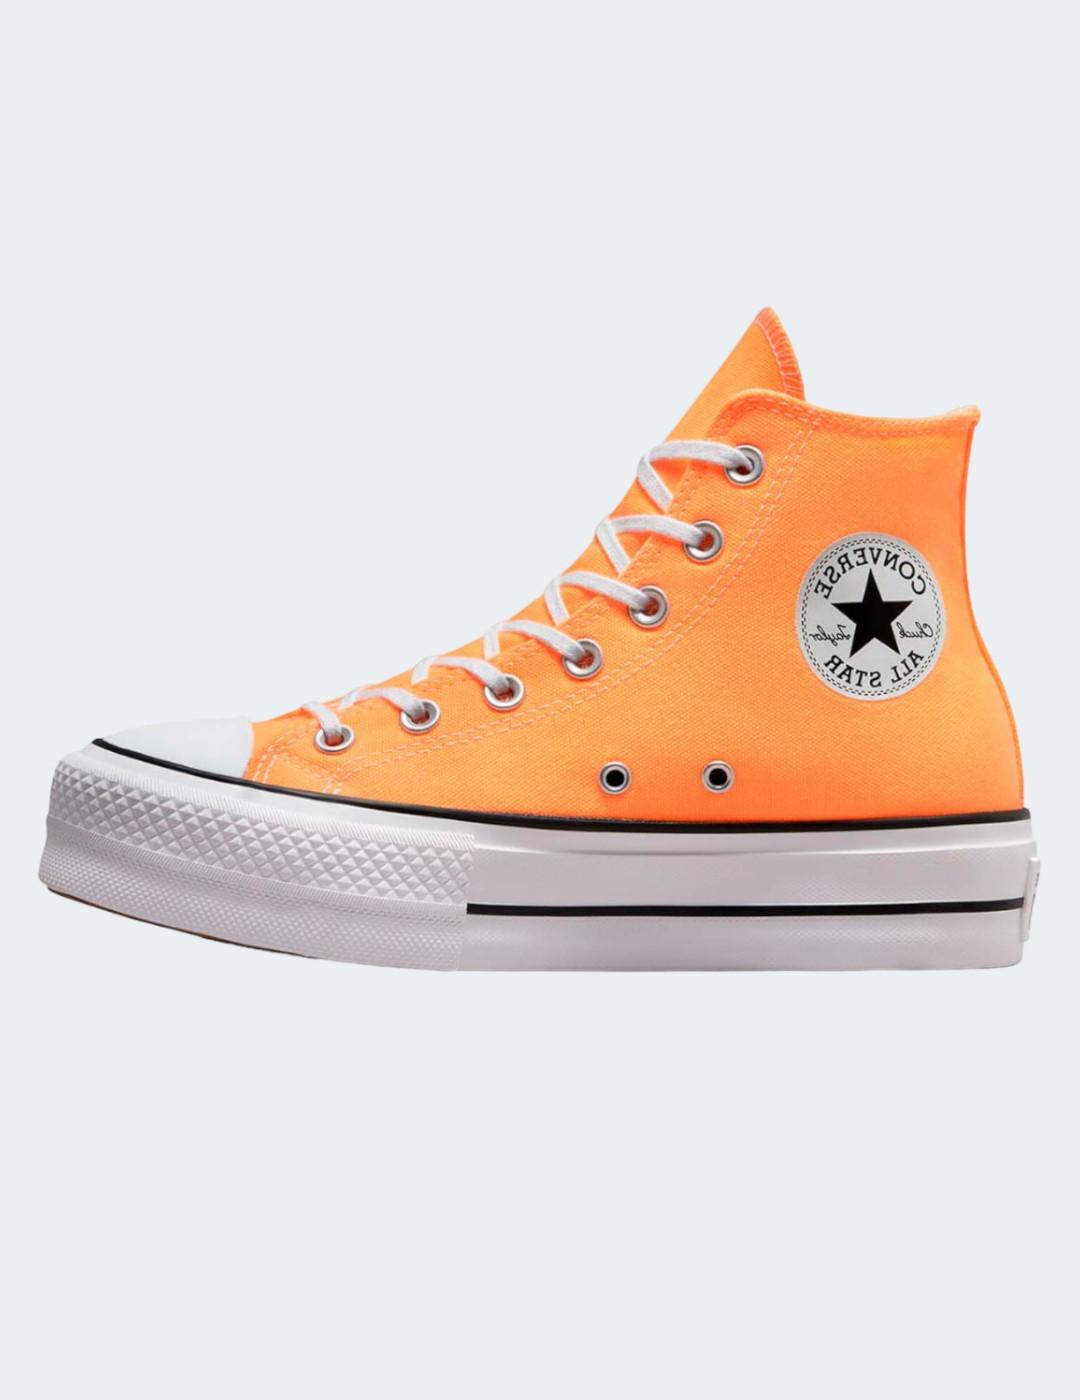 Zapatillas Converse lona color naranja m